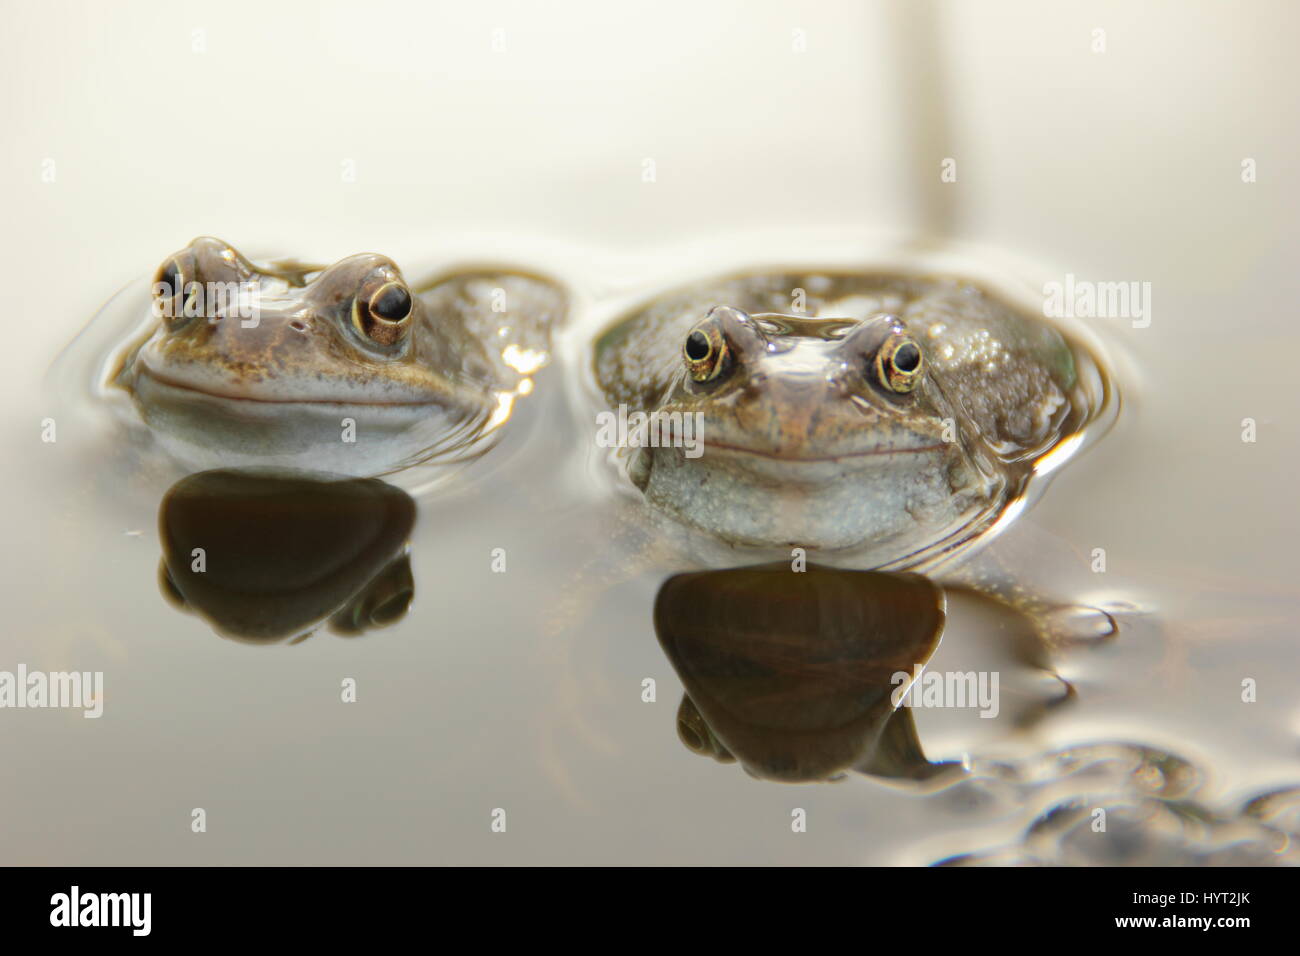 Europe les grenouilles (Rana temporaria) chorusing dans un étang de jardin urbain durant la saison de frai (reproduction), l'Angleterre, - mars Banque D'Images